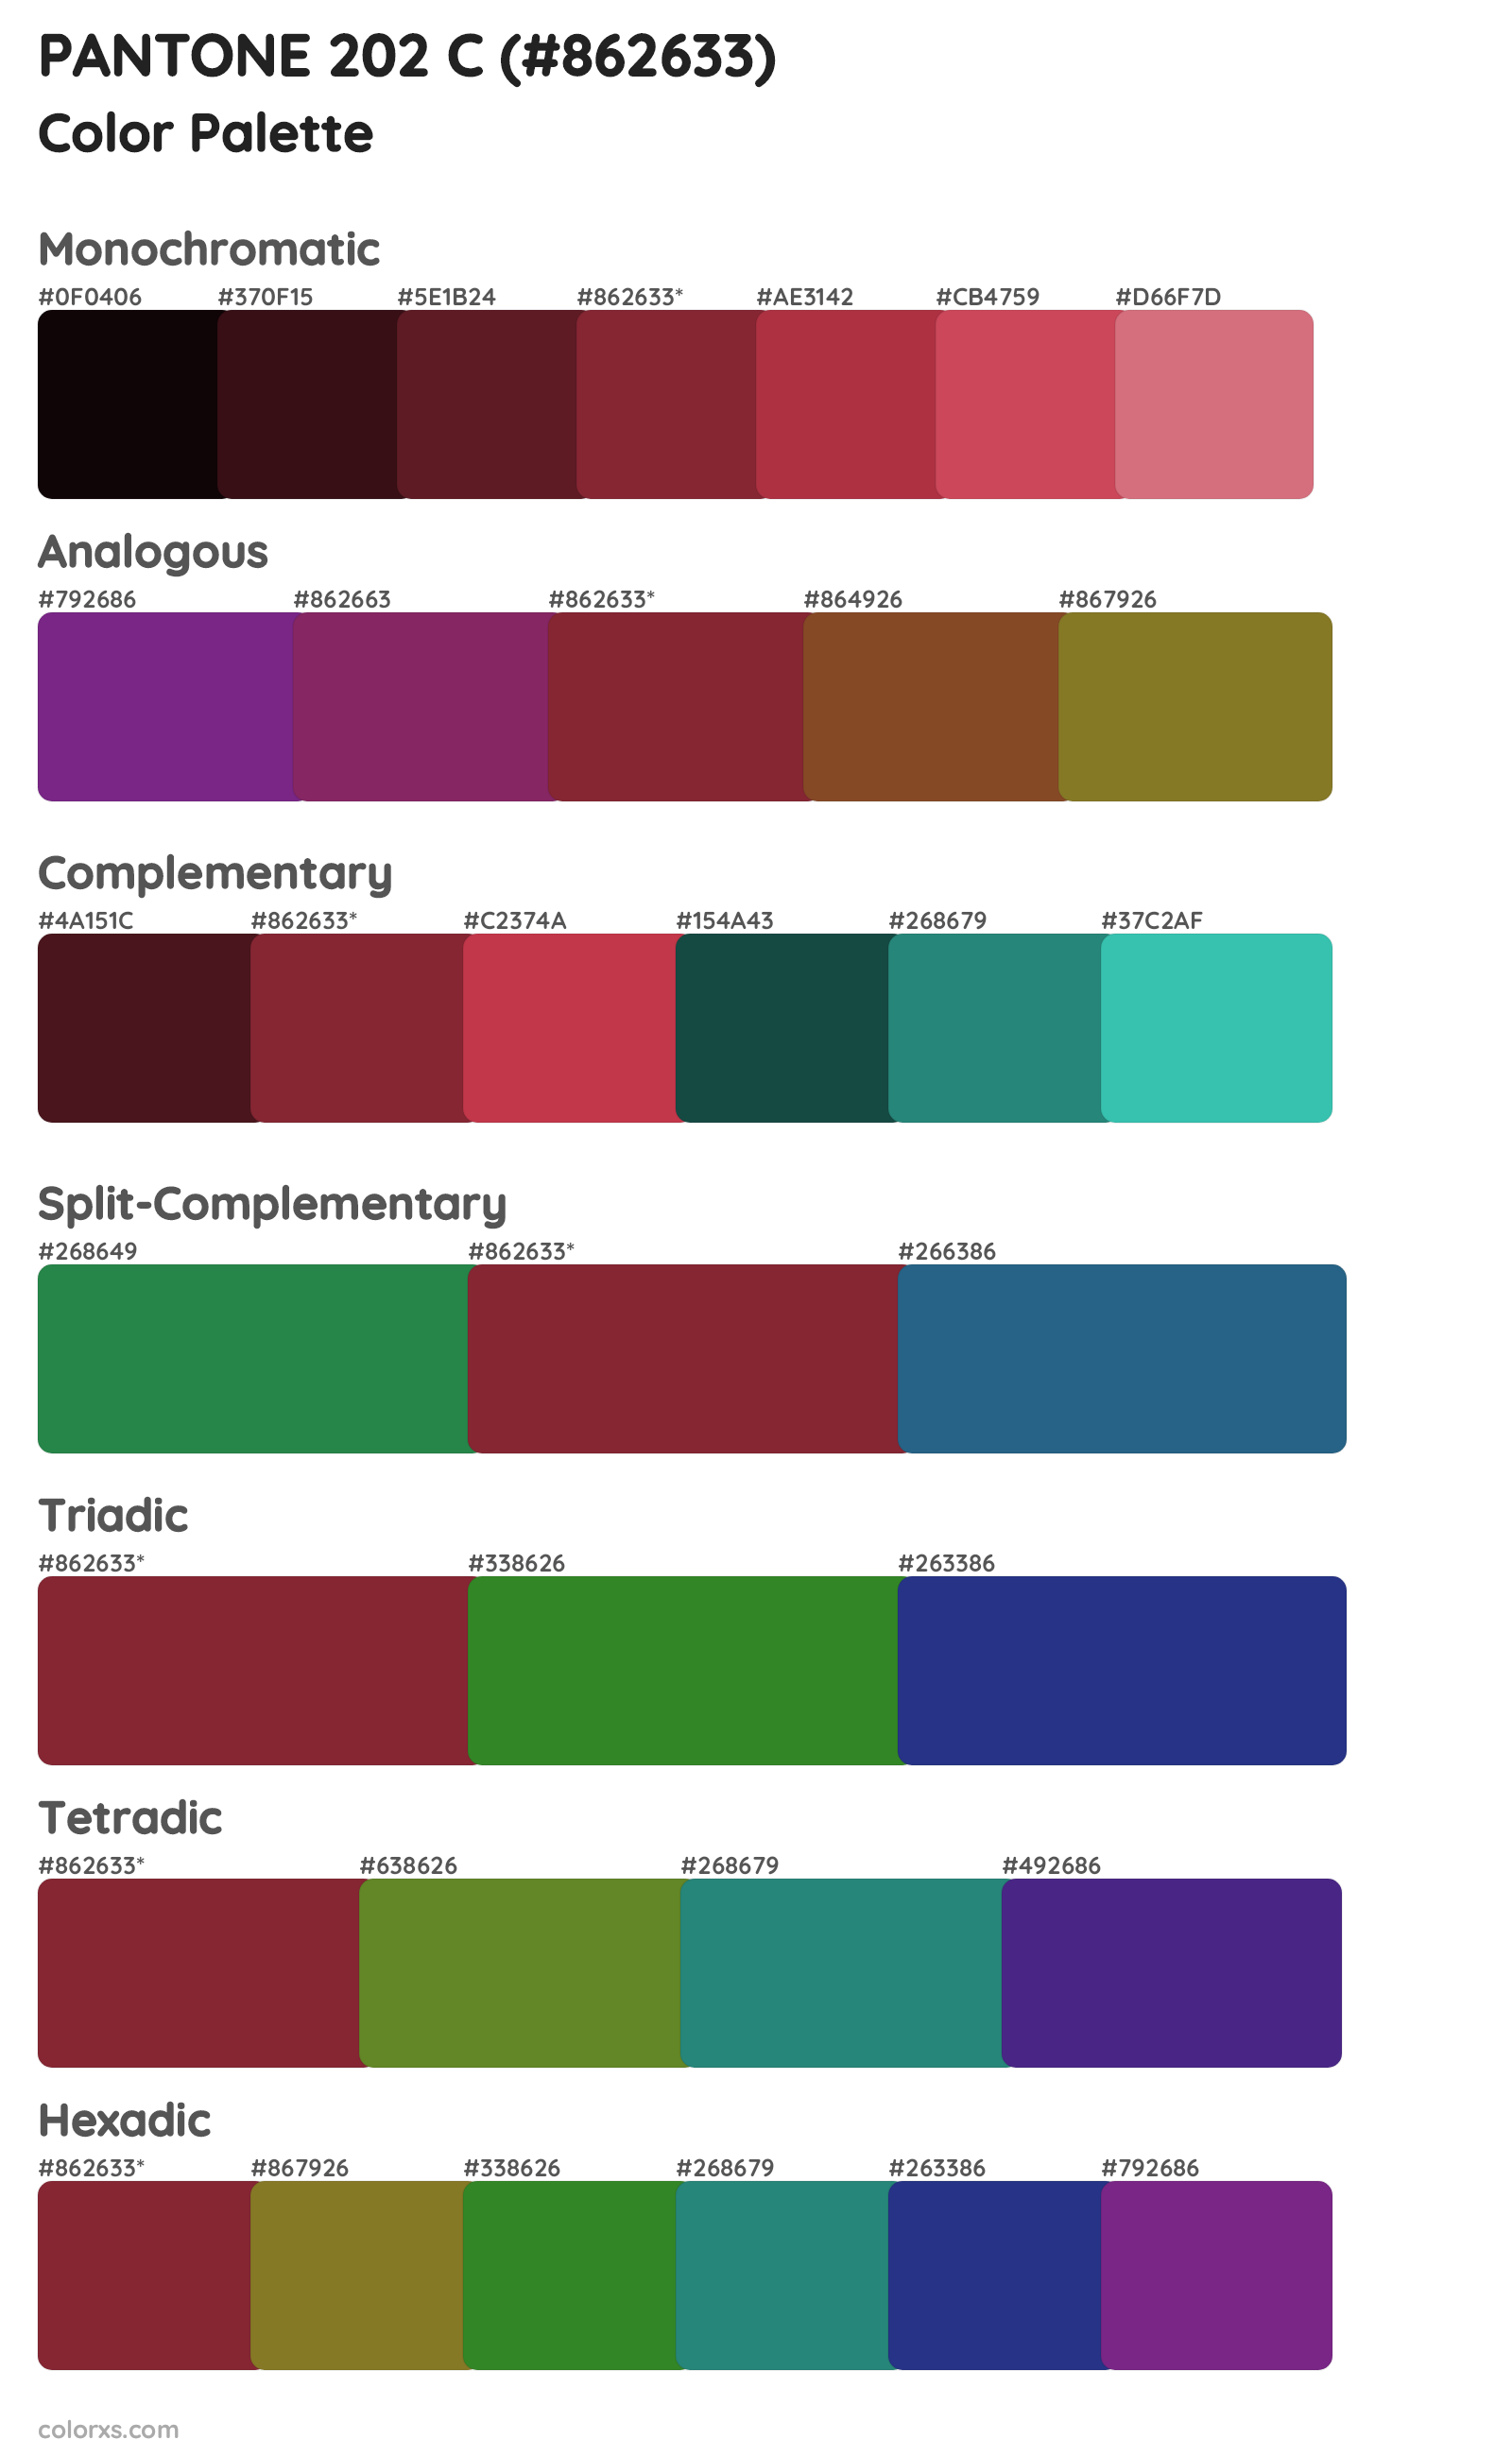 PANTONE 202 C Color Scheme Palettes